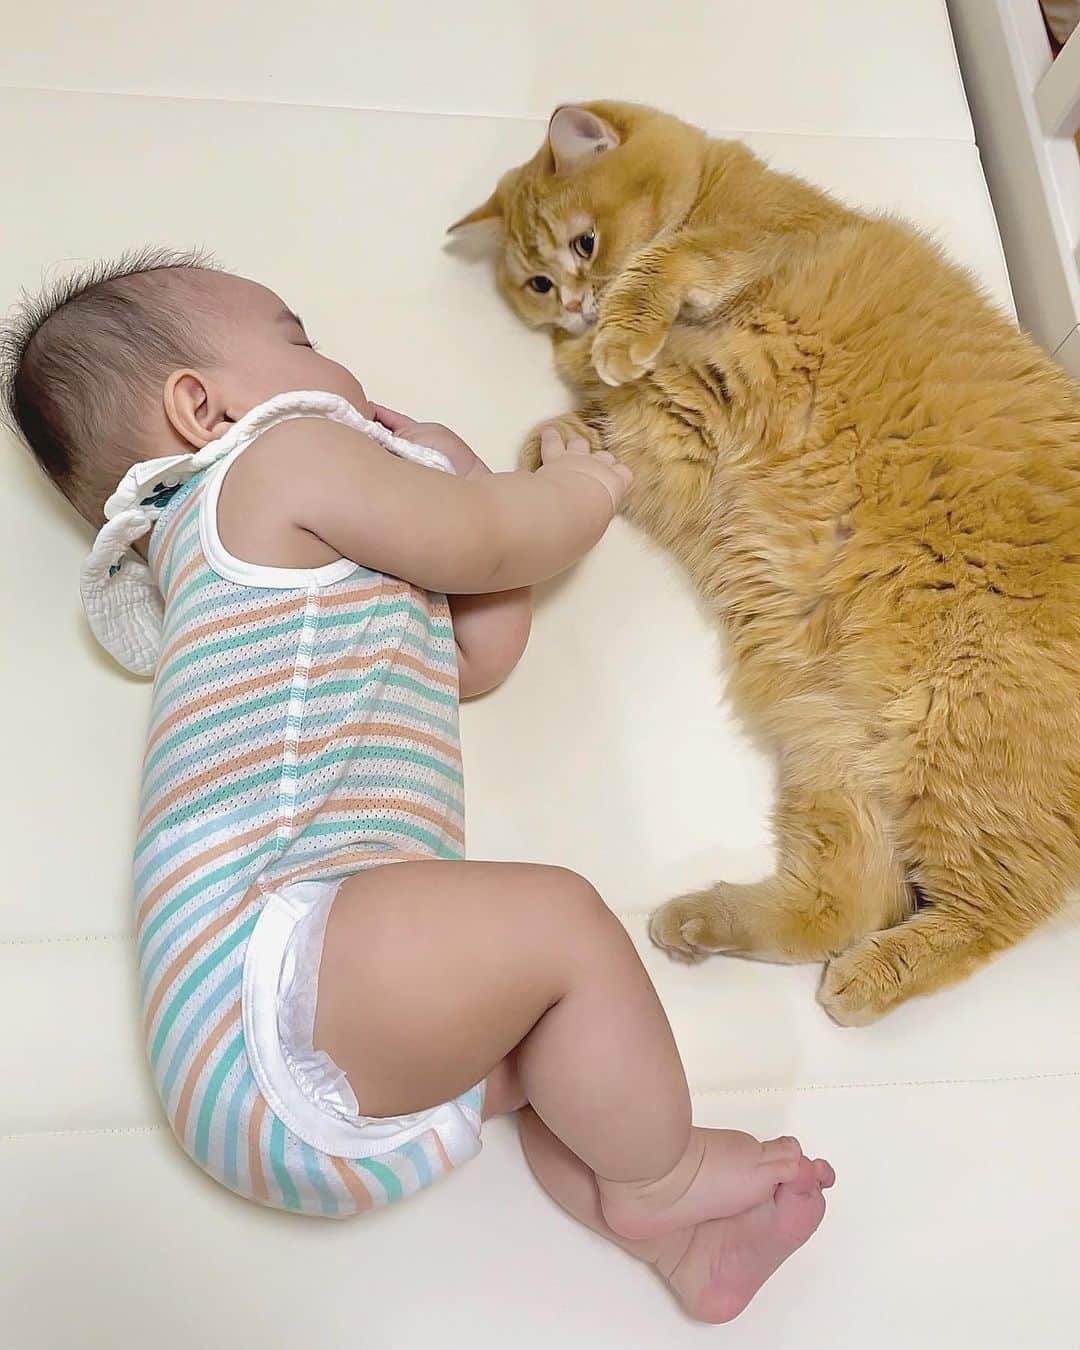 花王 メリーズ Merriesのインスタグラム：「同じくらいのサイズ感の猫ちゃん😺と赤ちゃん👶 . 仲良く手をつなぐ姿に癒されますね💓 . これから赤ちゃんが成長して、 サイズの対比が変わっていくのも楽しみですね🥰 . こちらの素敵なお写真は @babymaru_10 さんのお写真です @babymaru_10さまのアカウントはとっても素敵なお写真ばかりですので、みなさんもぜひご覧になってみてくださいね😍 --------------------------------------------------- 花王の赤ちゃん用品ブランド「メリーズ」公式アカウントです👶 . 「#メリーズ」「#メリーズファーストプレミアム」で投稿いただいた中から素敵なお写真をご紹介していますので、ぜひ投稿してみてくださいね✨ . 新発売！メリーズで繊細な肌に５つ星のやさしさを🎵 --------------------------------------------------- . . #メリーズファーストプレミアム #赤ちゃん #ベビー #成長記録 #子育て #子育てグラム #赤ちゃんのいる生活 #新米ママ #プレママ #ママカメラ #親バカ部 #ハイハイ #赤ちゃんのいる暮らし #赤ちゃん写真 #赤ちゃん動画 #ベビスタグラム #0歳 #1歳 #2歳 #育児 #育児あるある #ベビーフォト #ベビーグッズ #オムツ #オムツ姿 #育児グッズ #👶」